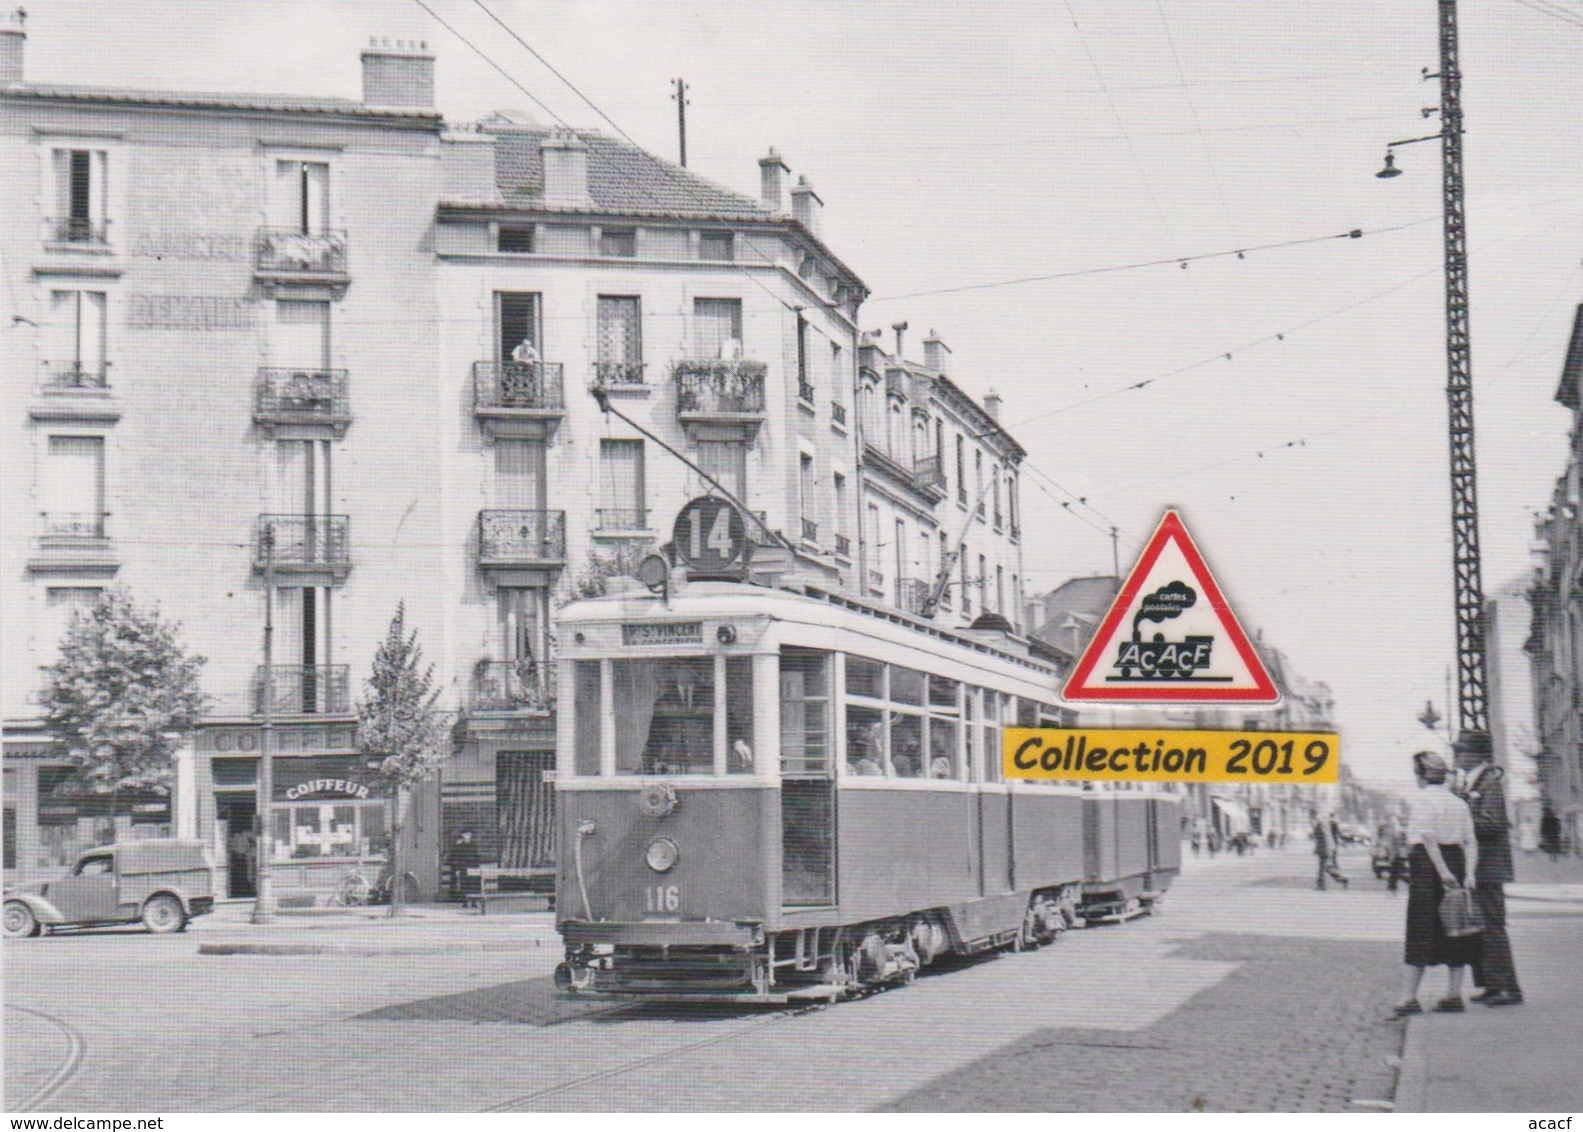 194T - Motrice N°116 De La Ligne 4 Du Tramway De Nancy (54)  - - Tramways